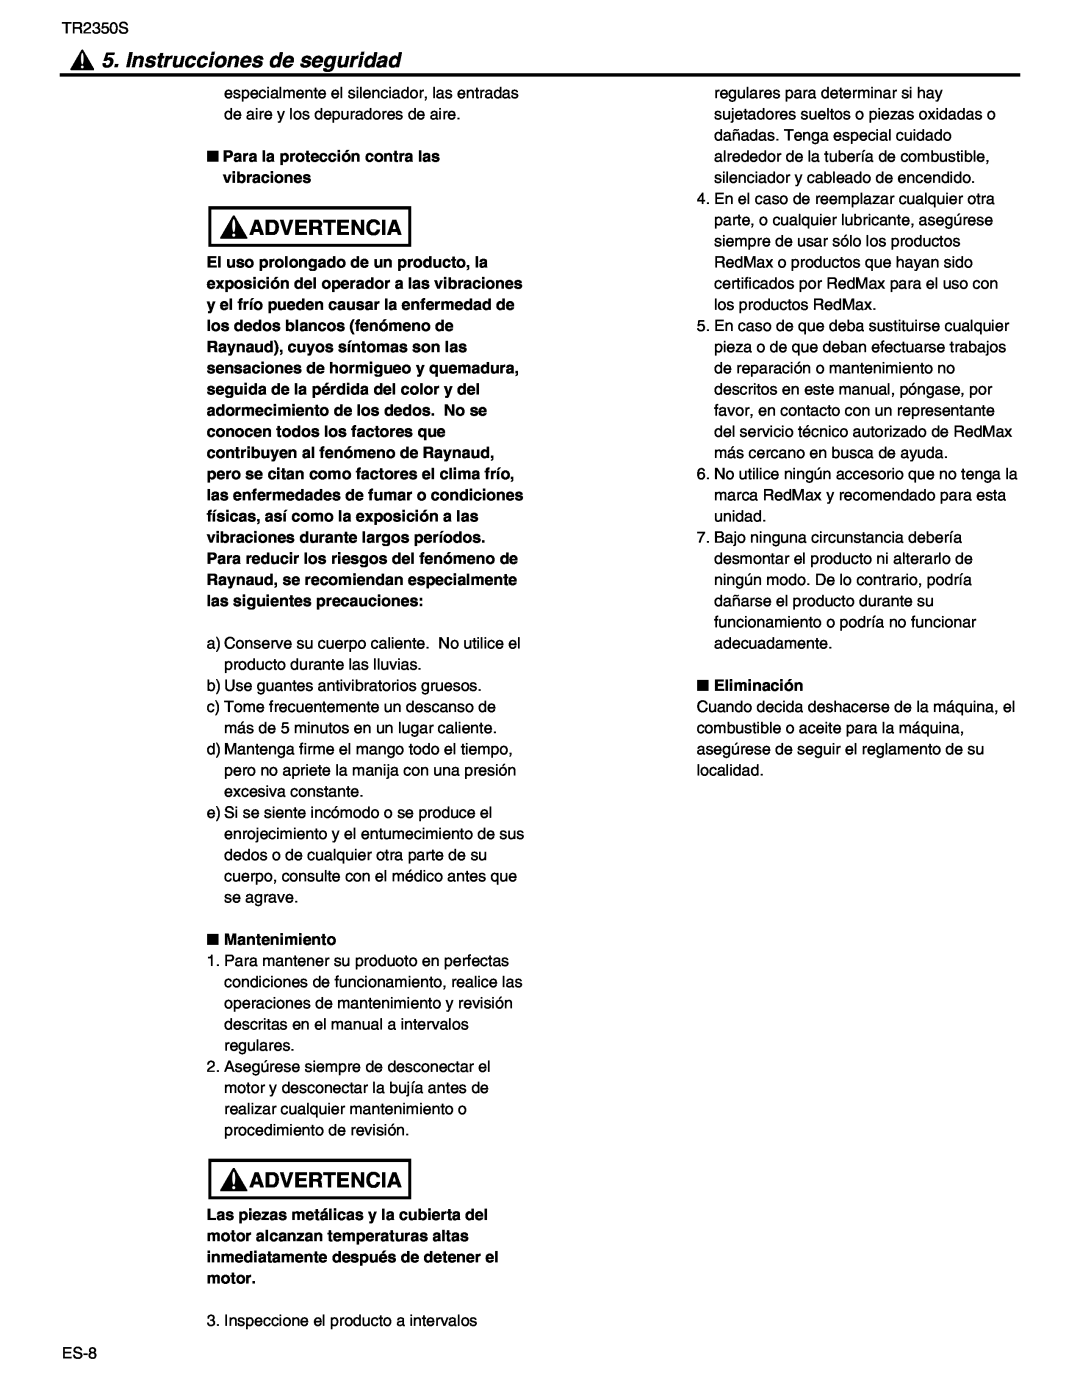 RedMax TR2350S manual Instrucciones de seguridad, Advertencia, Para la protección contra las vibraciones, Eliminación 